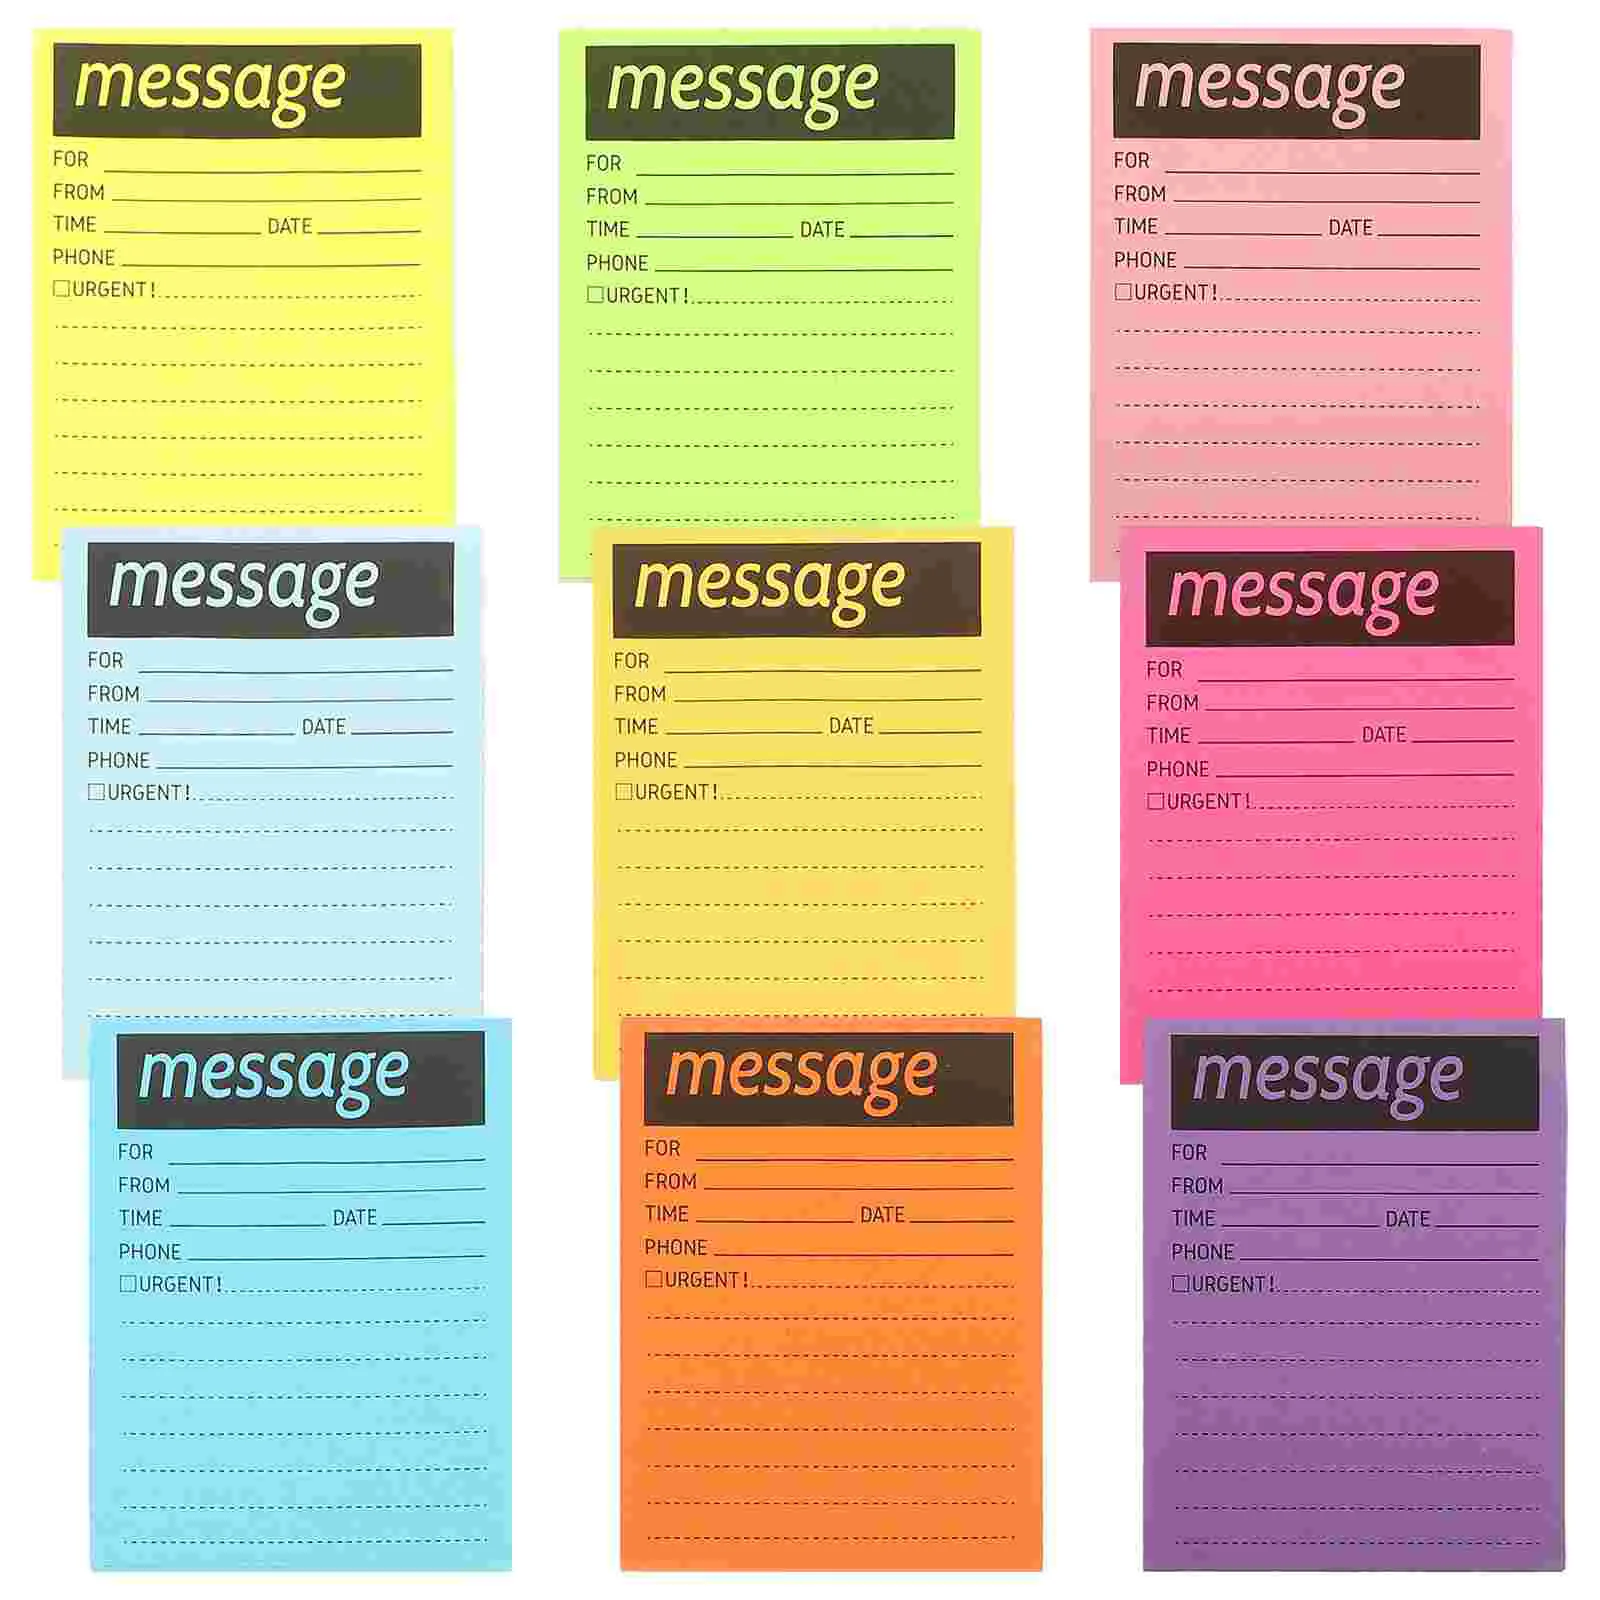 9 Livros Fluorescente Notas Memorando Adesivos Escola De Mensagem De Almofadas De Telefones De Escritório Portátil De Fluorescência De Papel A